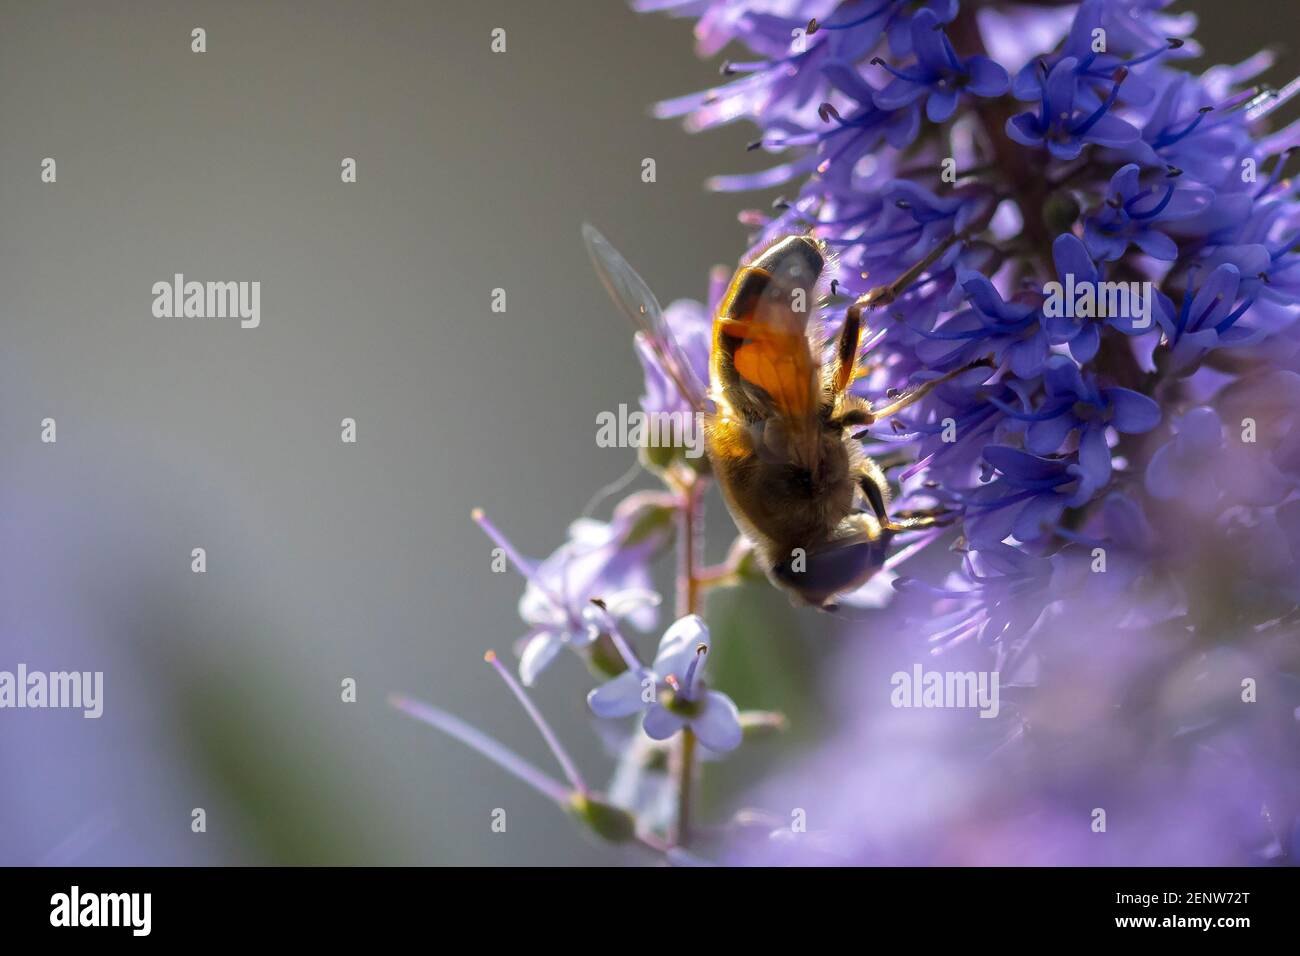 Gros plan d'une abeille occidentale ou d'une abeille européenne API mellifera nourrissant le nectar de fleurs violettes Banque D'Images